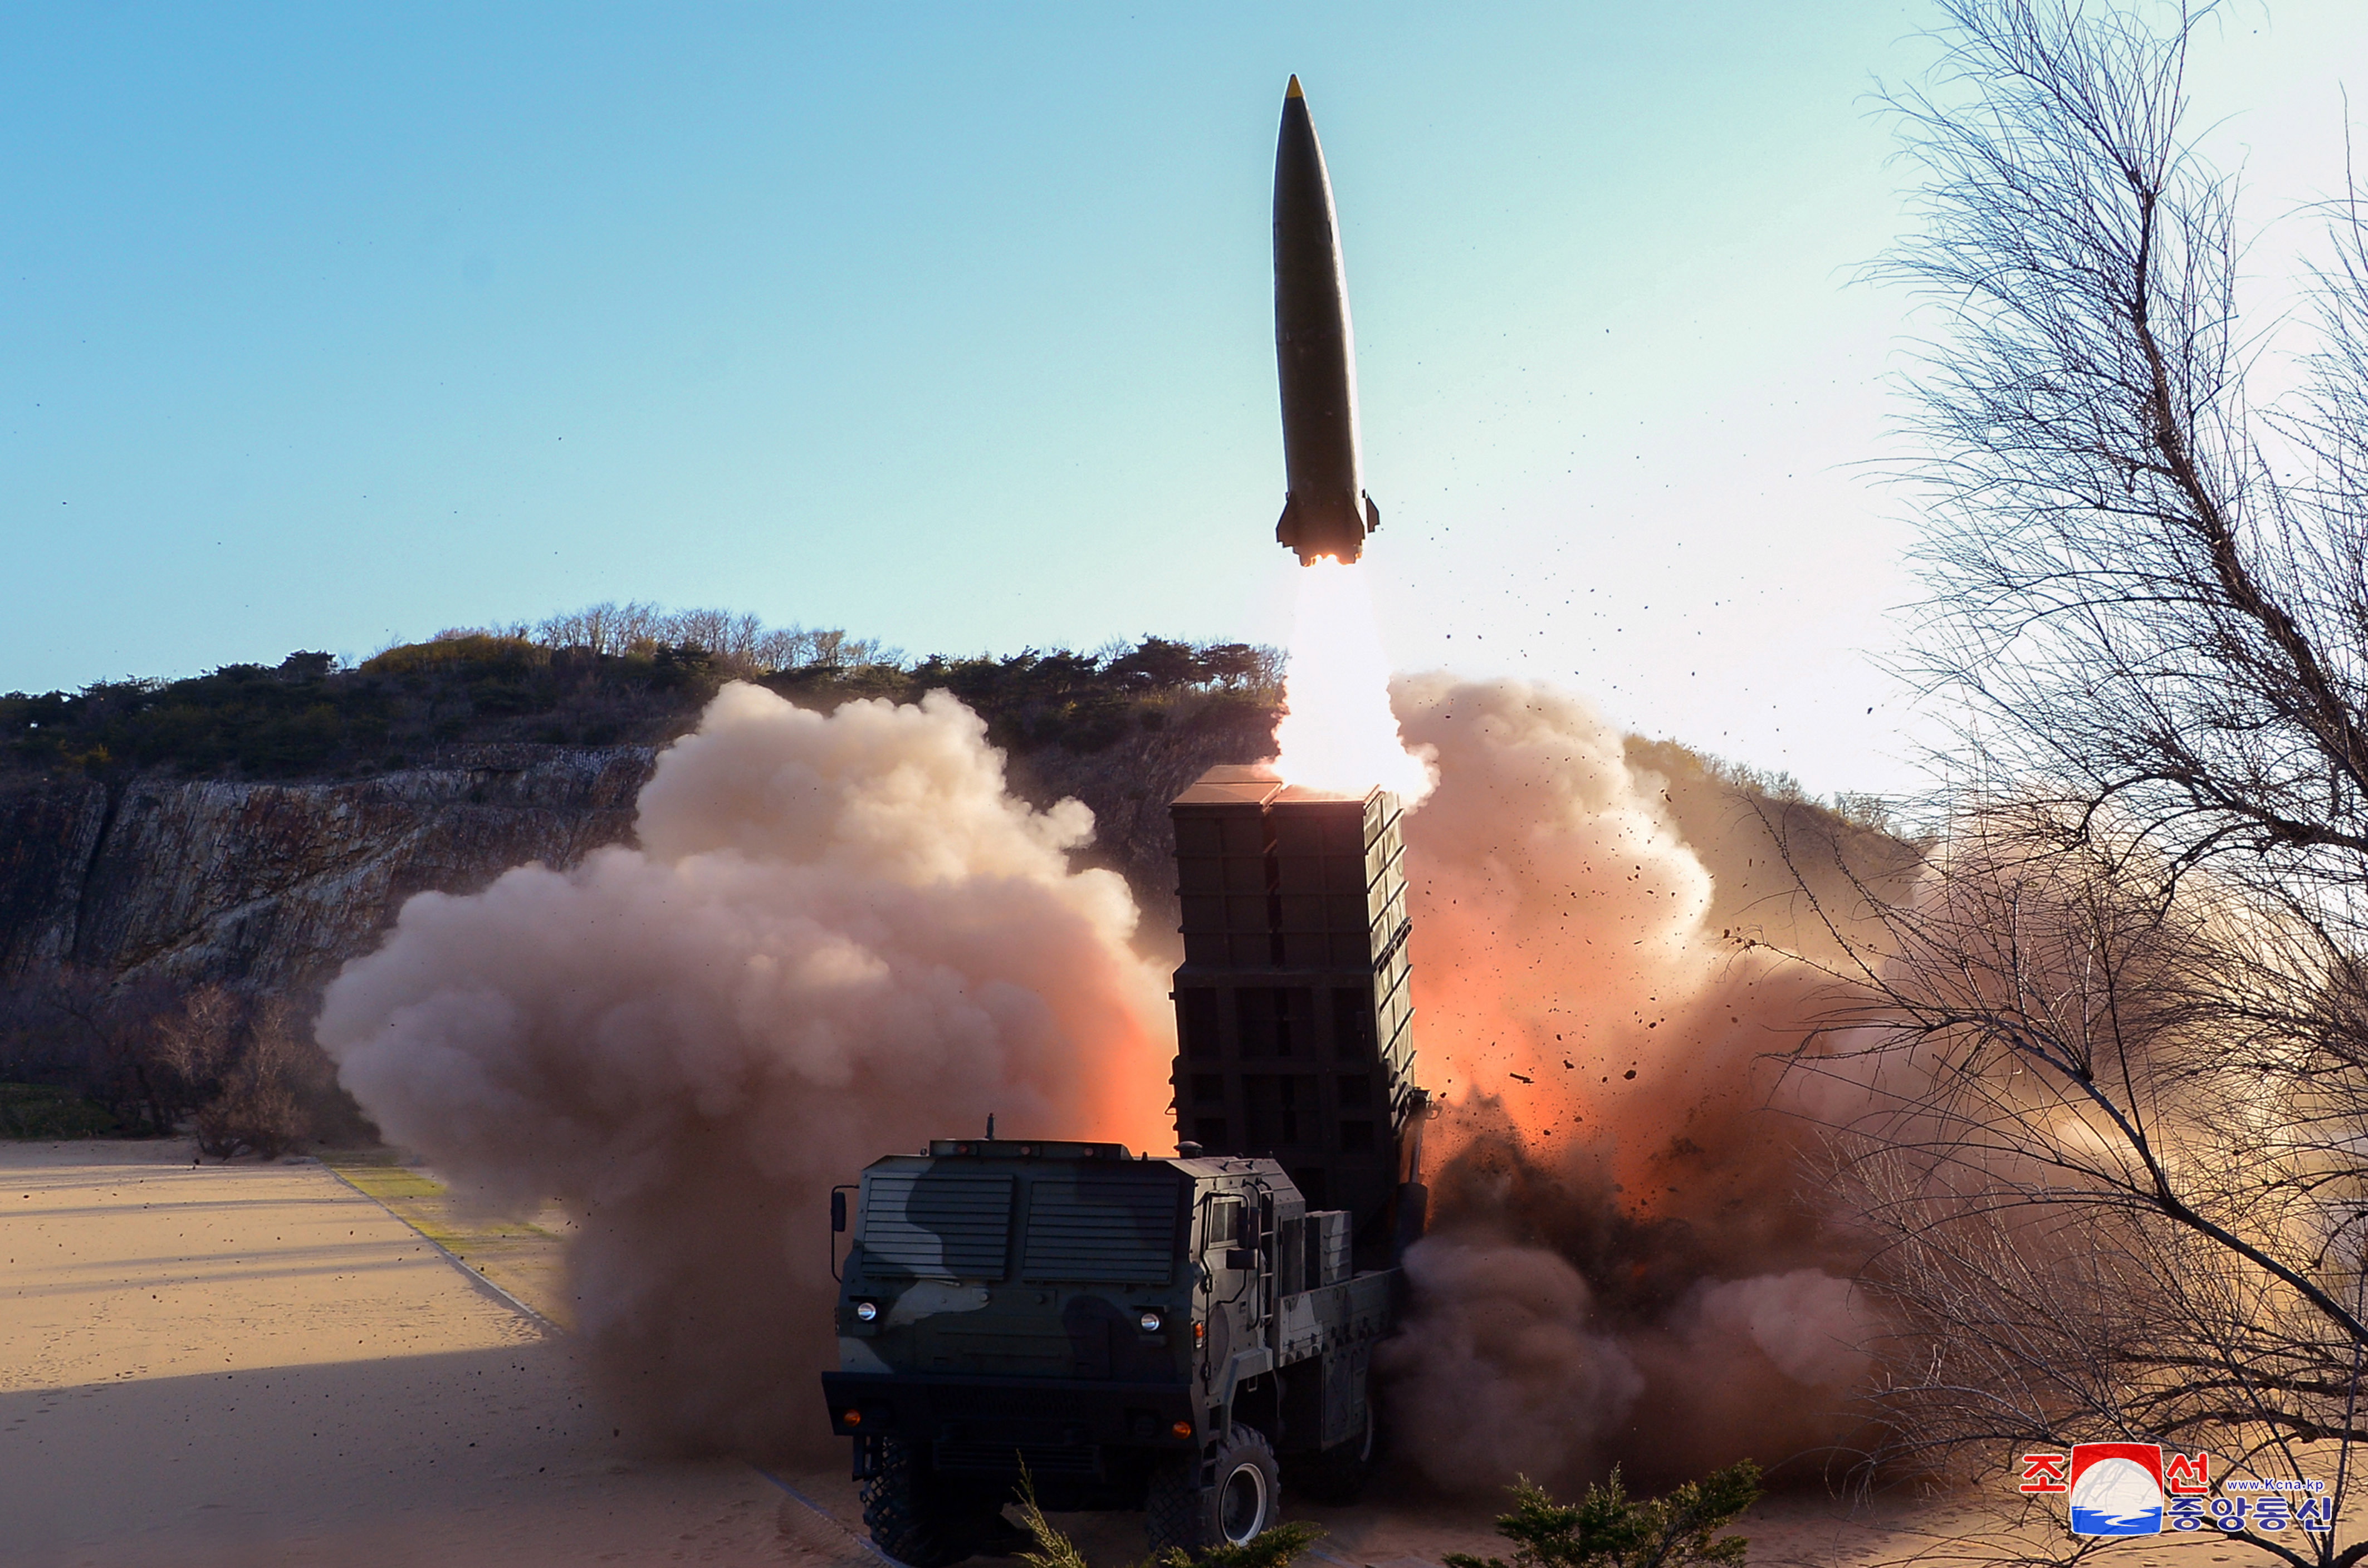 Pionyang lanza proyectiles para mejorar su uso de armas nucleares tácticas